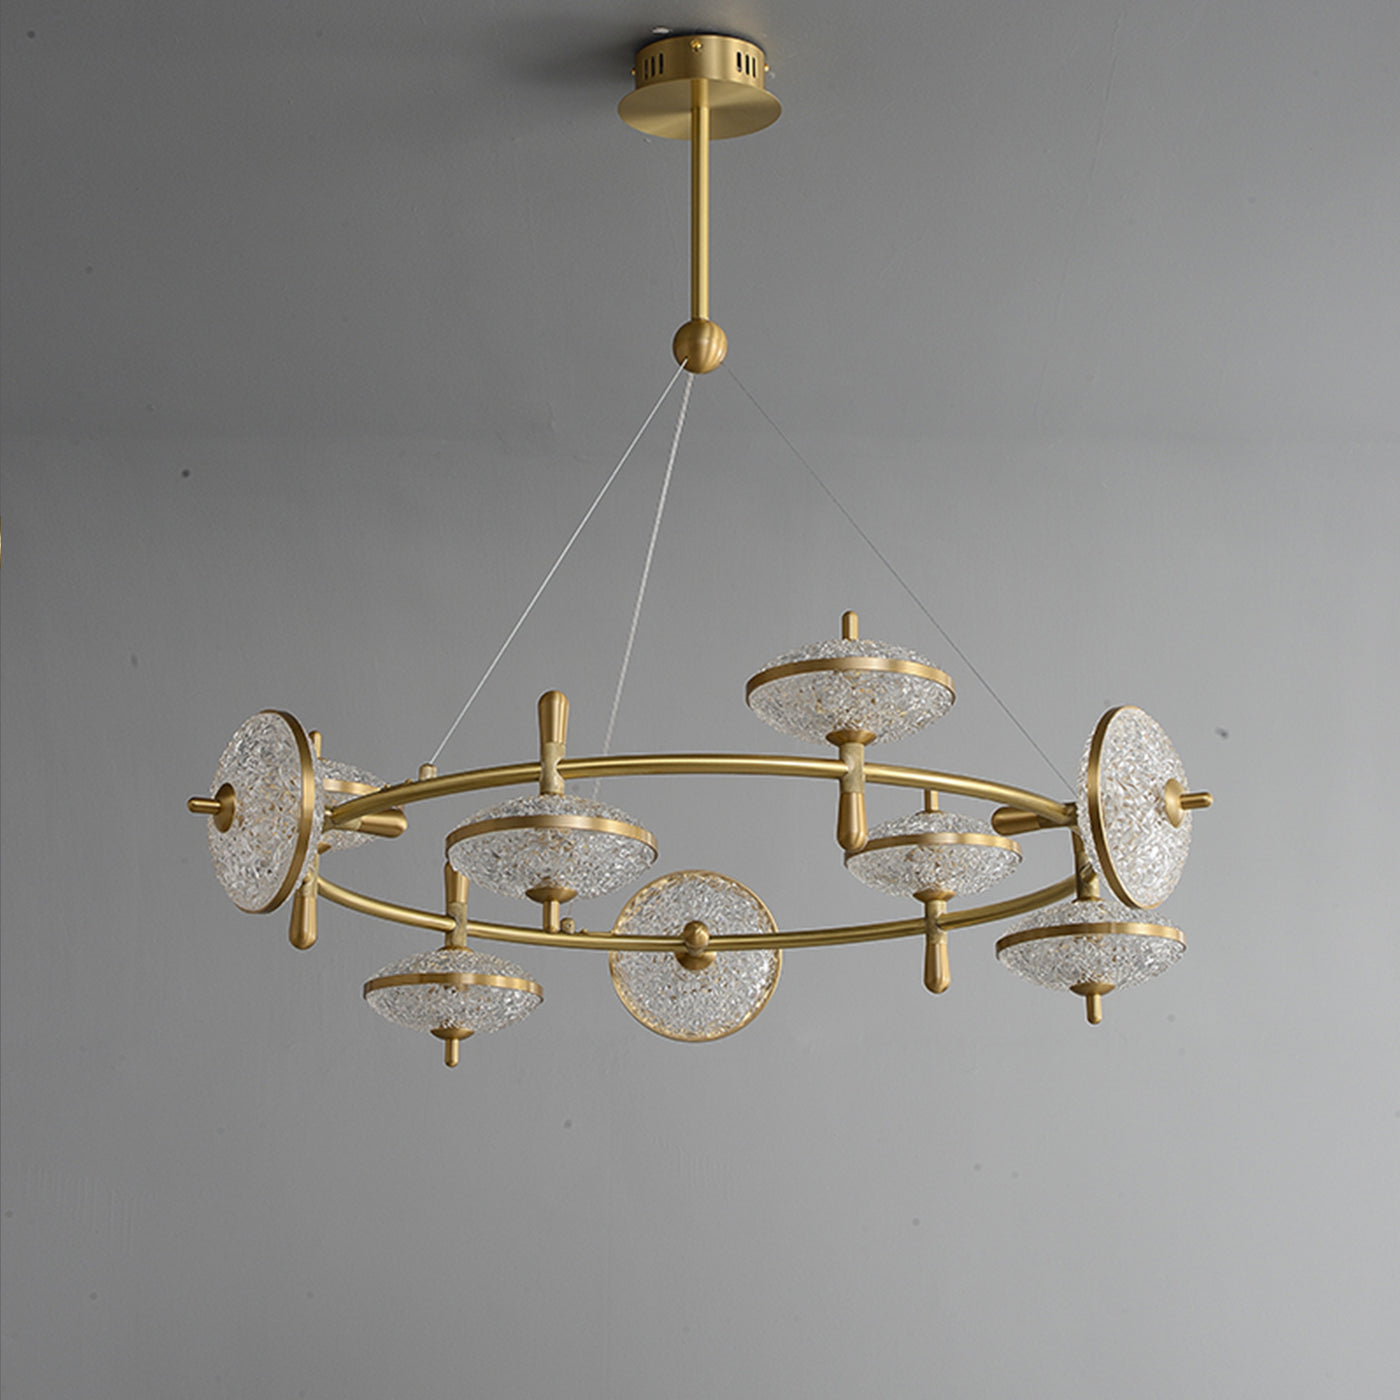 Creative brass disc chandelier